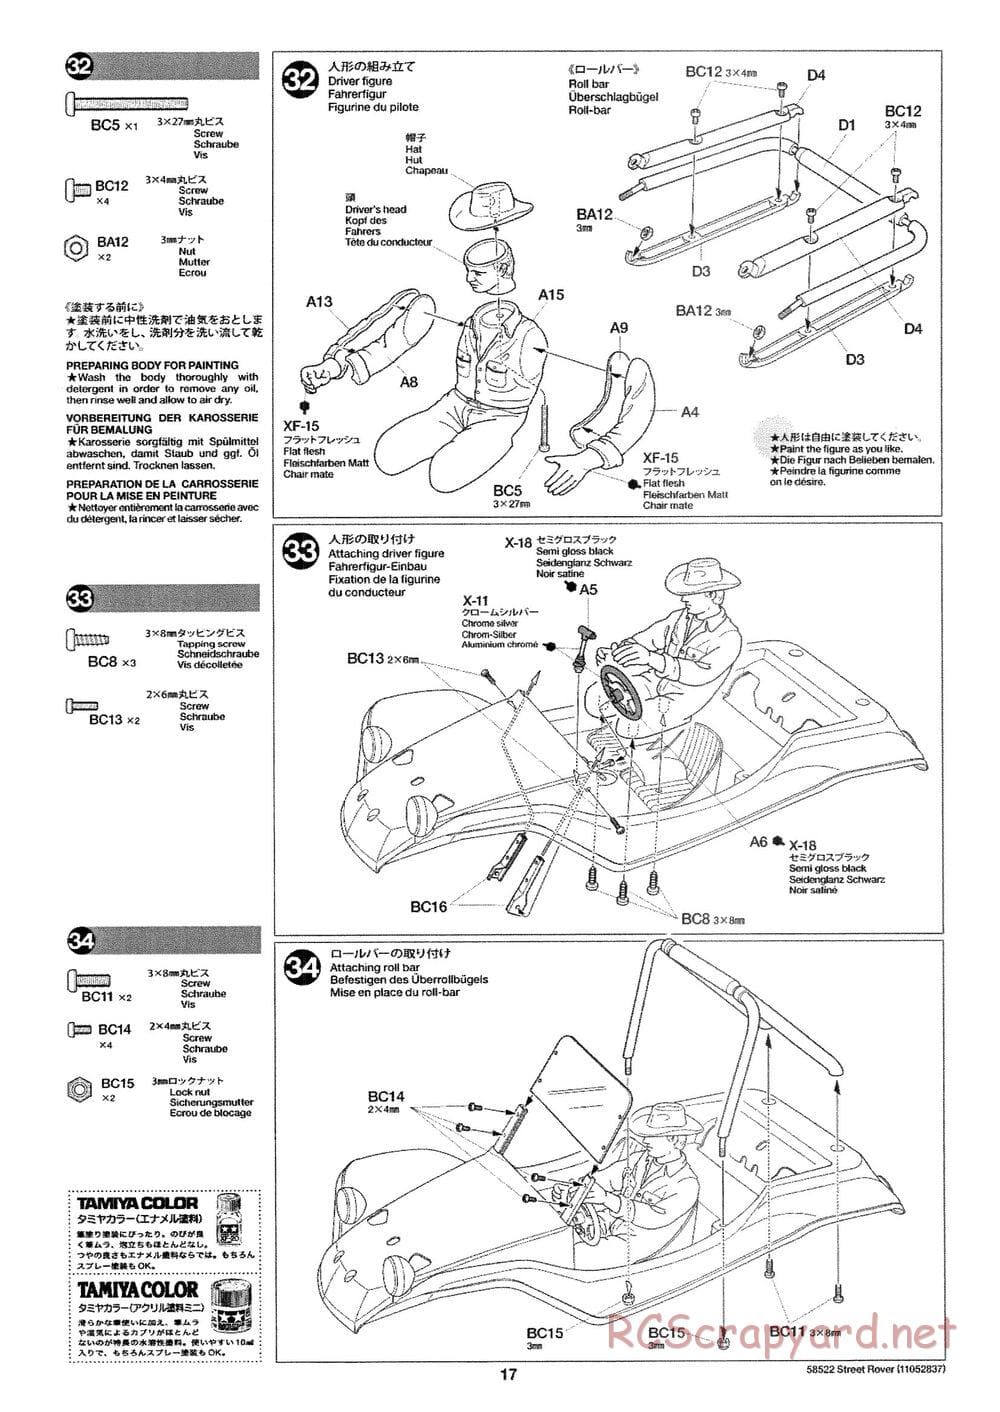 Tamiya - Street Rover Chassis - Manual - Page 18